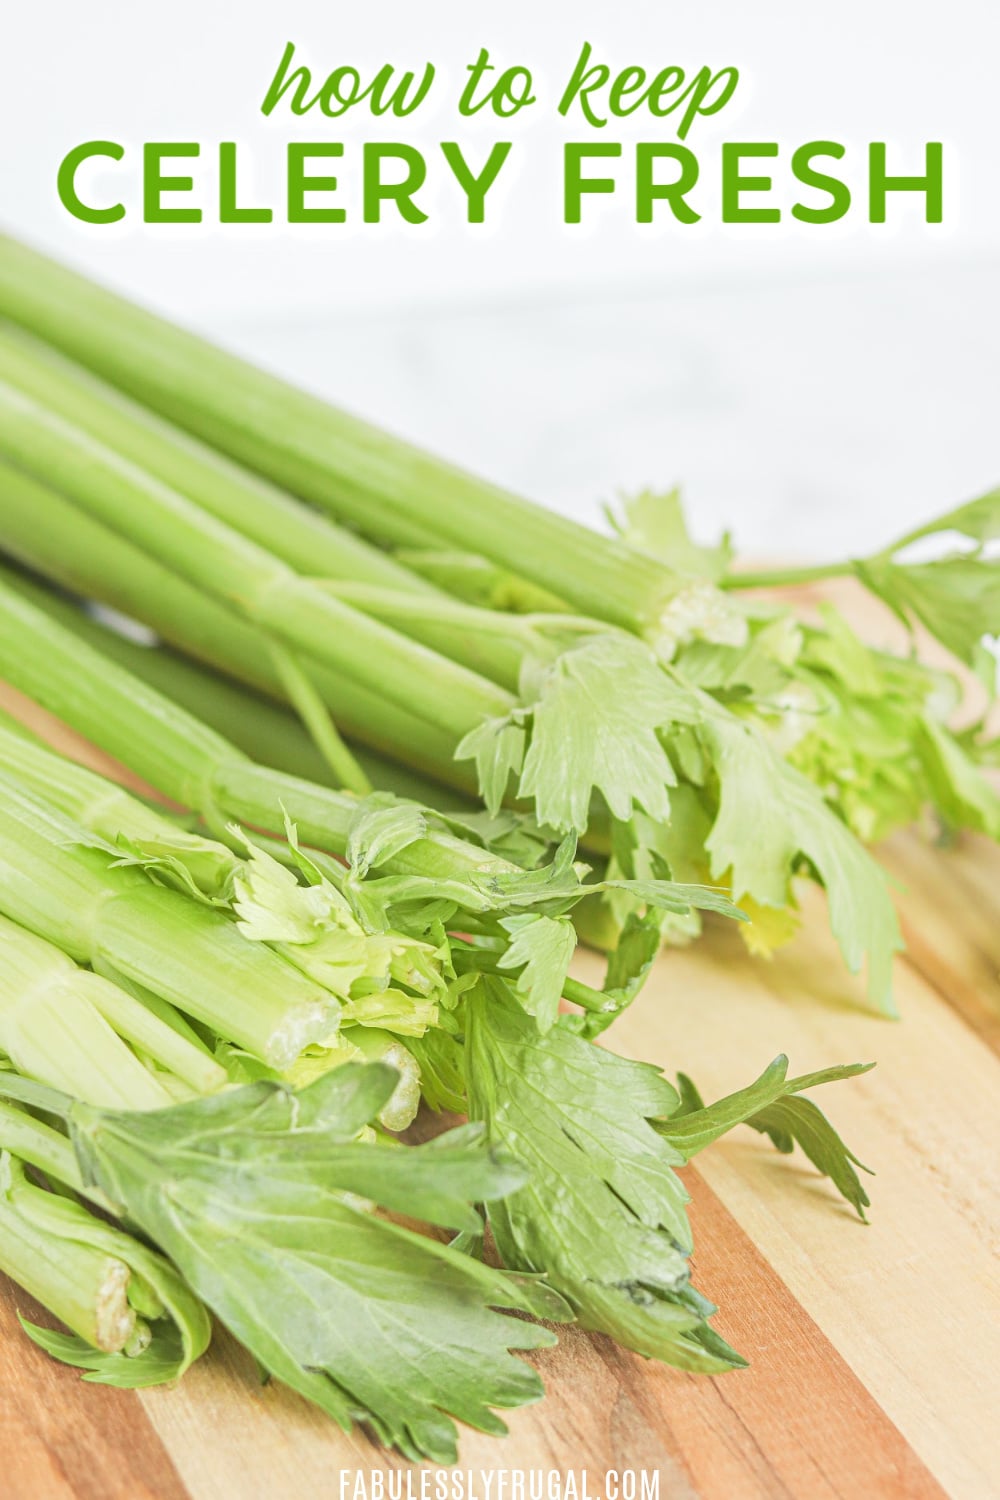 Keep celery fresh for longer